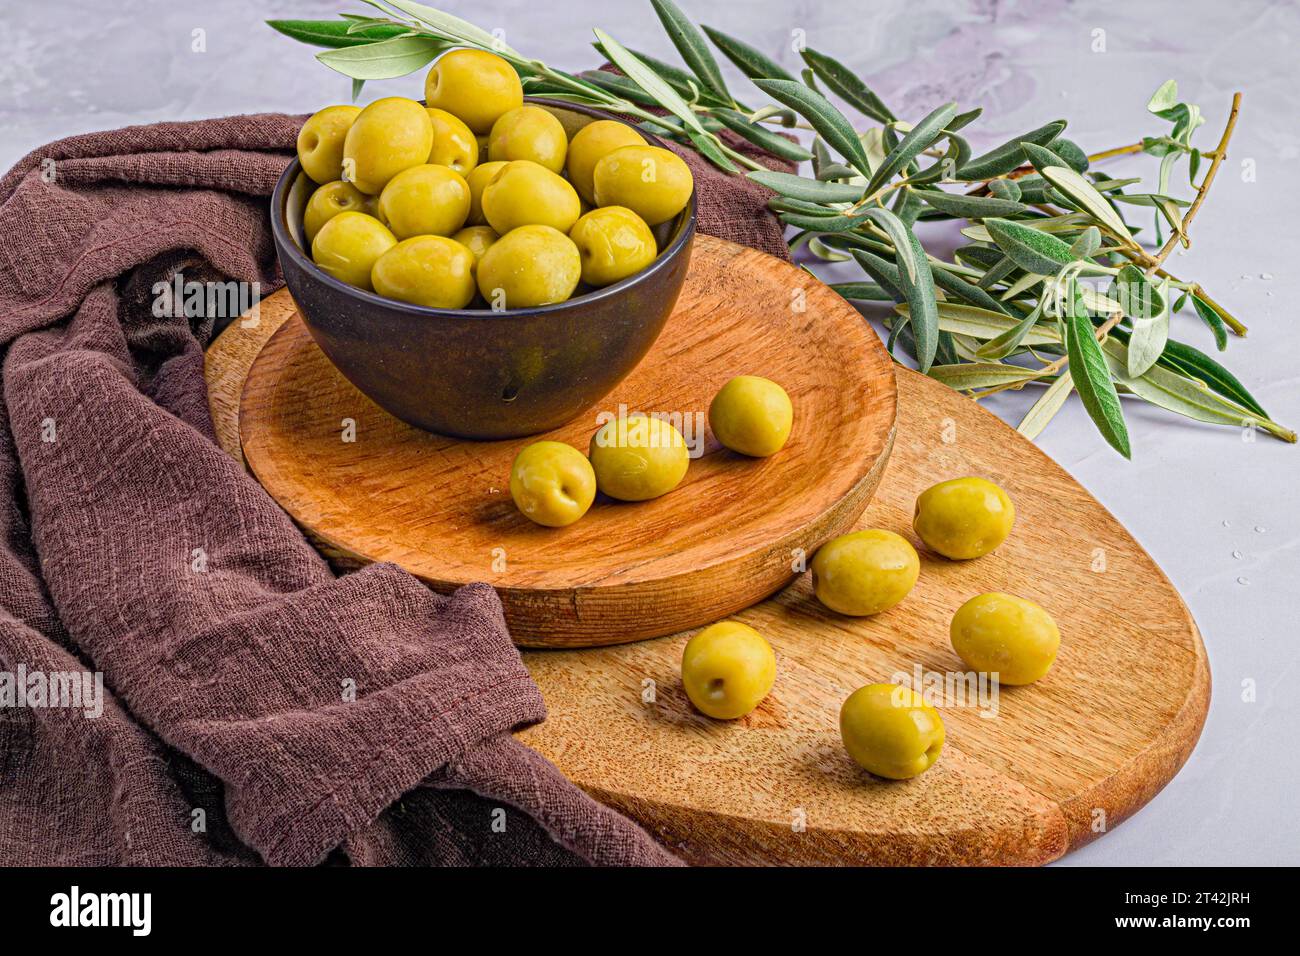 Une planche en bois avec une gamme d'olives Manzanilla vert mûr et d'autres décorations Banque D'Images